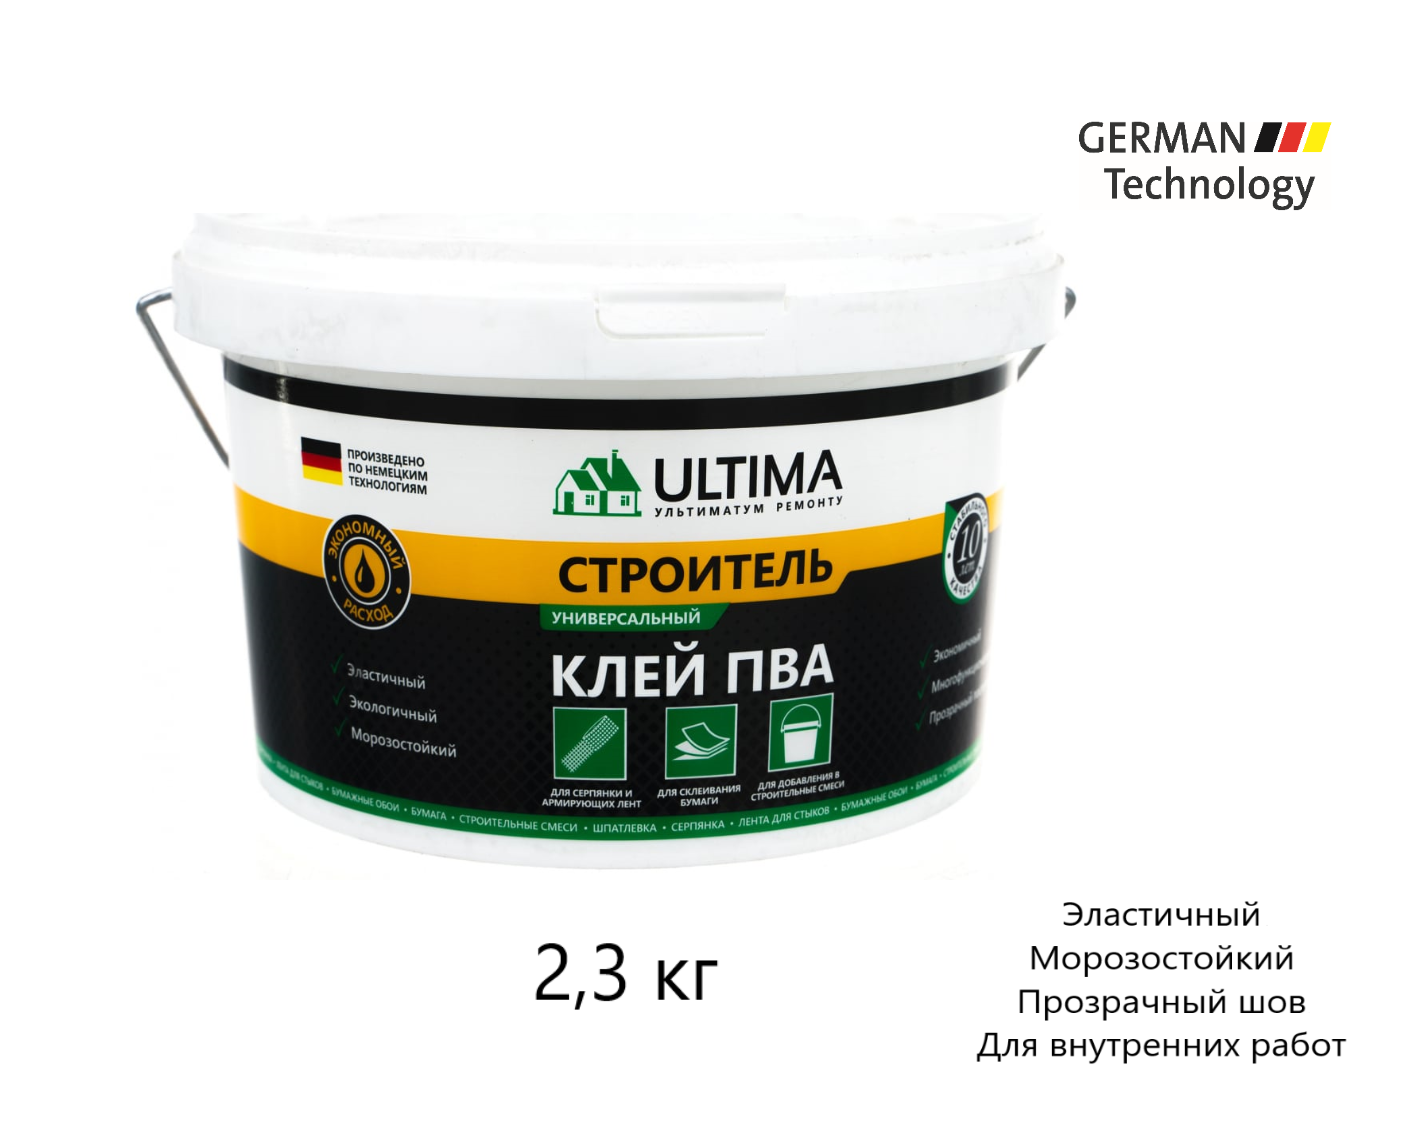 Клей ПВА ULTIMA строитель универсальный 2,3 кг